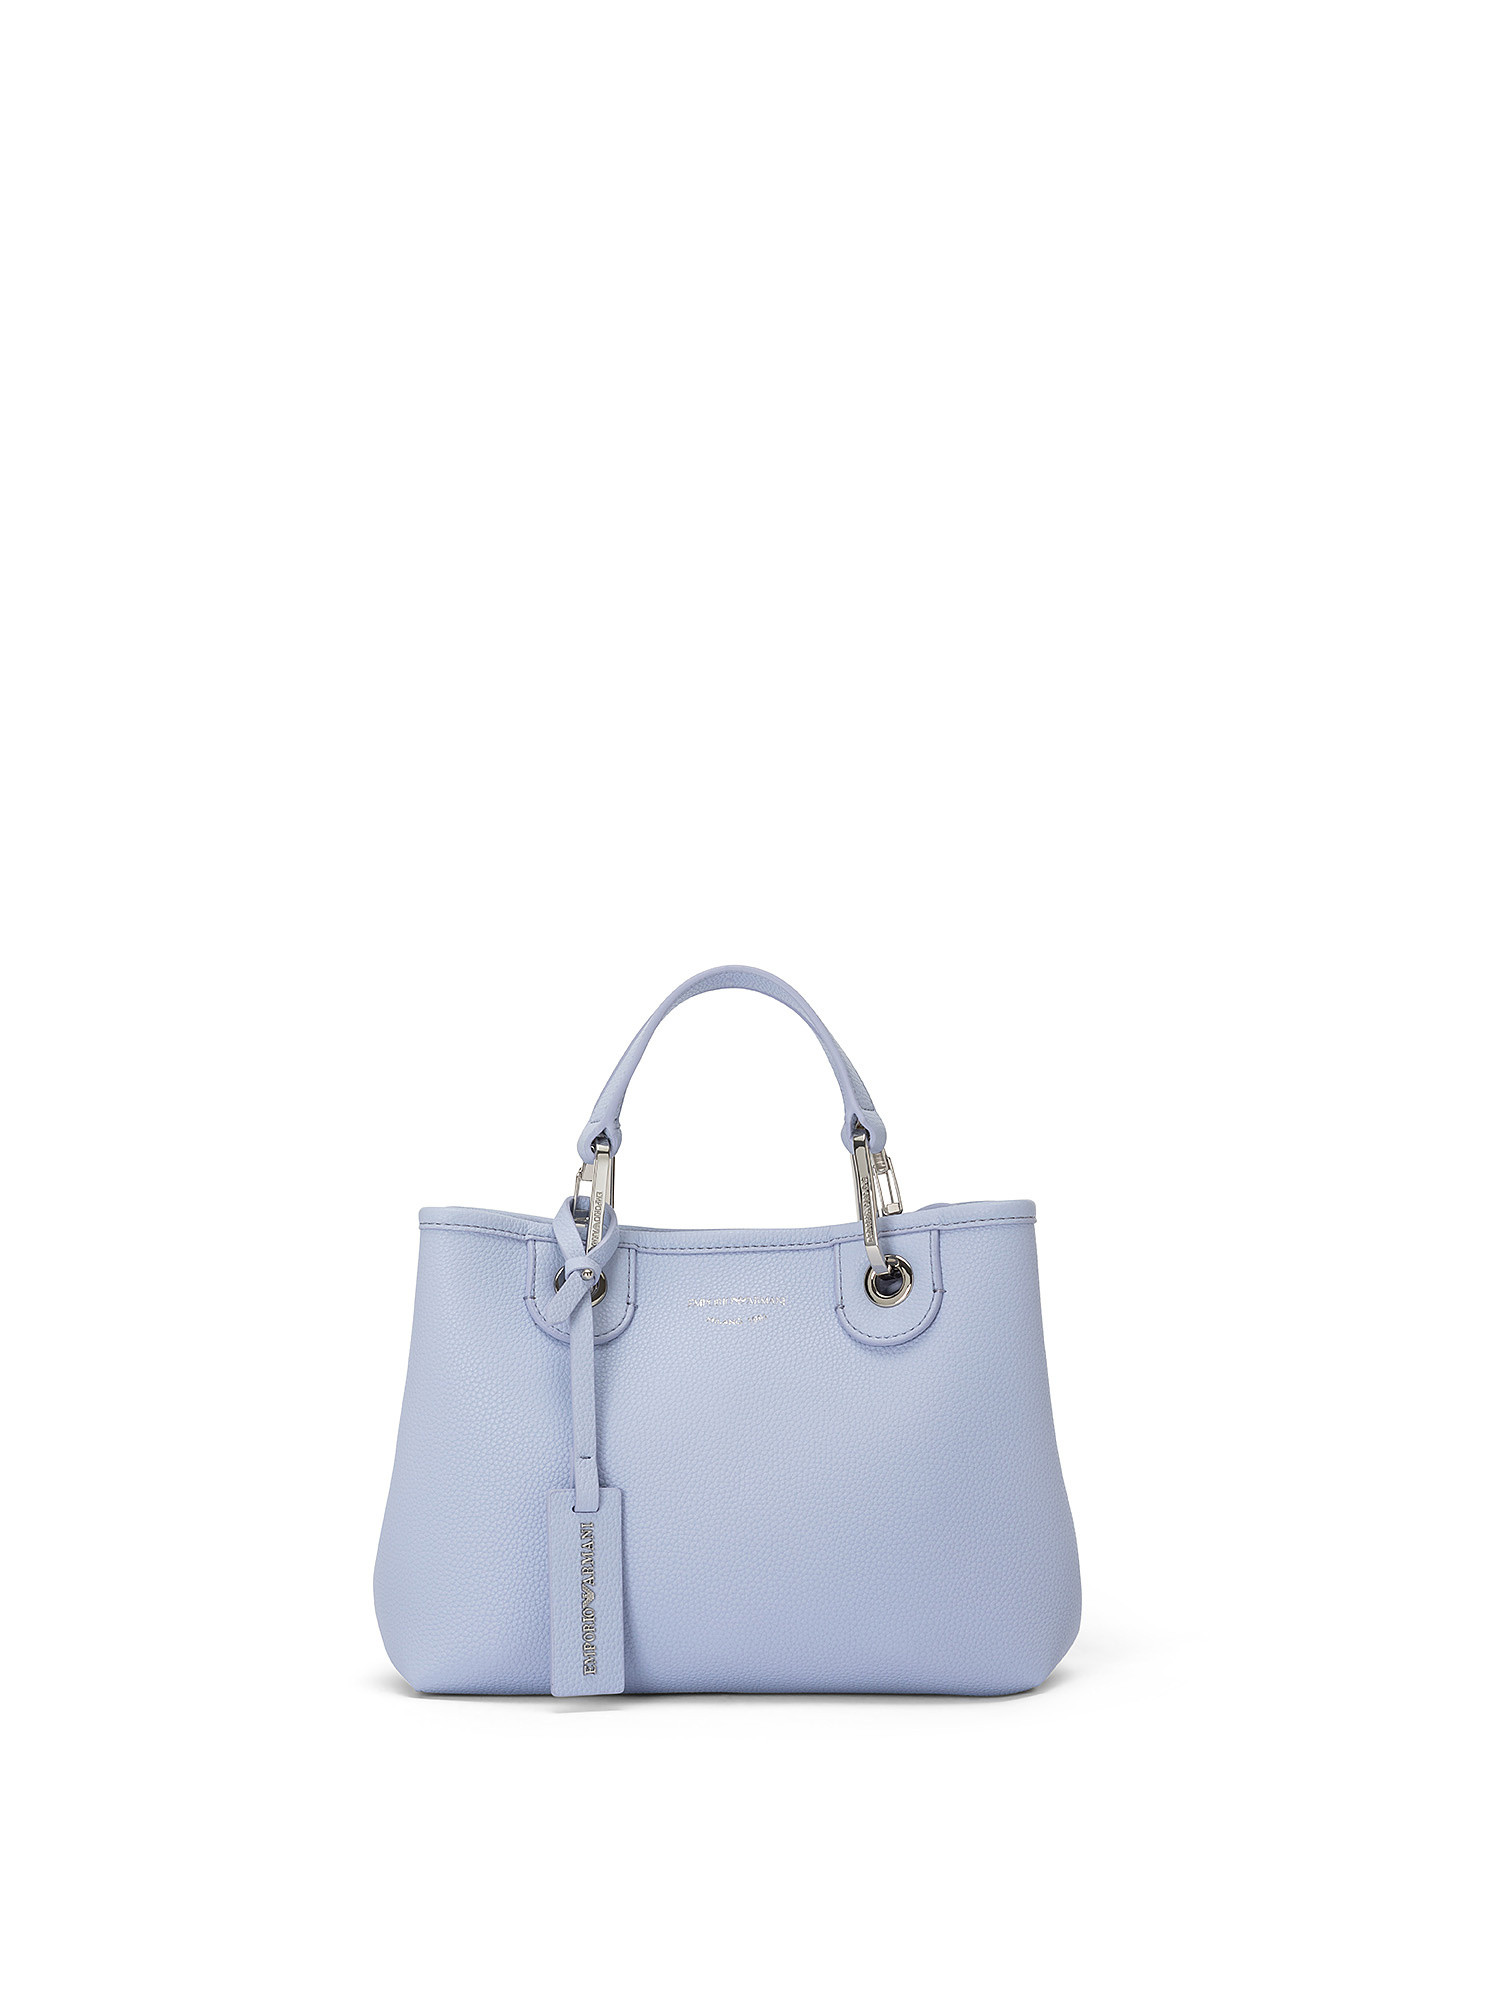 Shopping bag, Light Blue, large image number 0